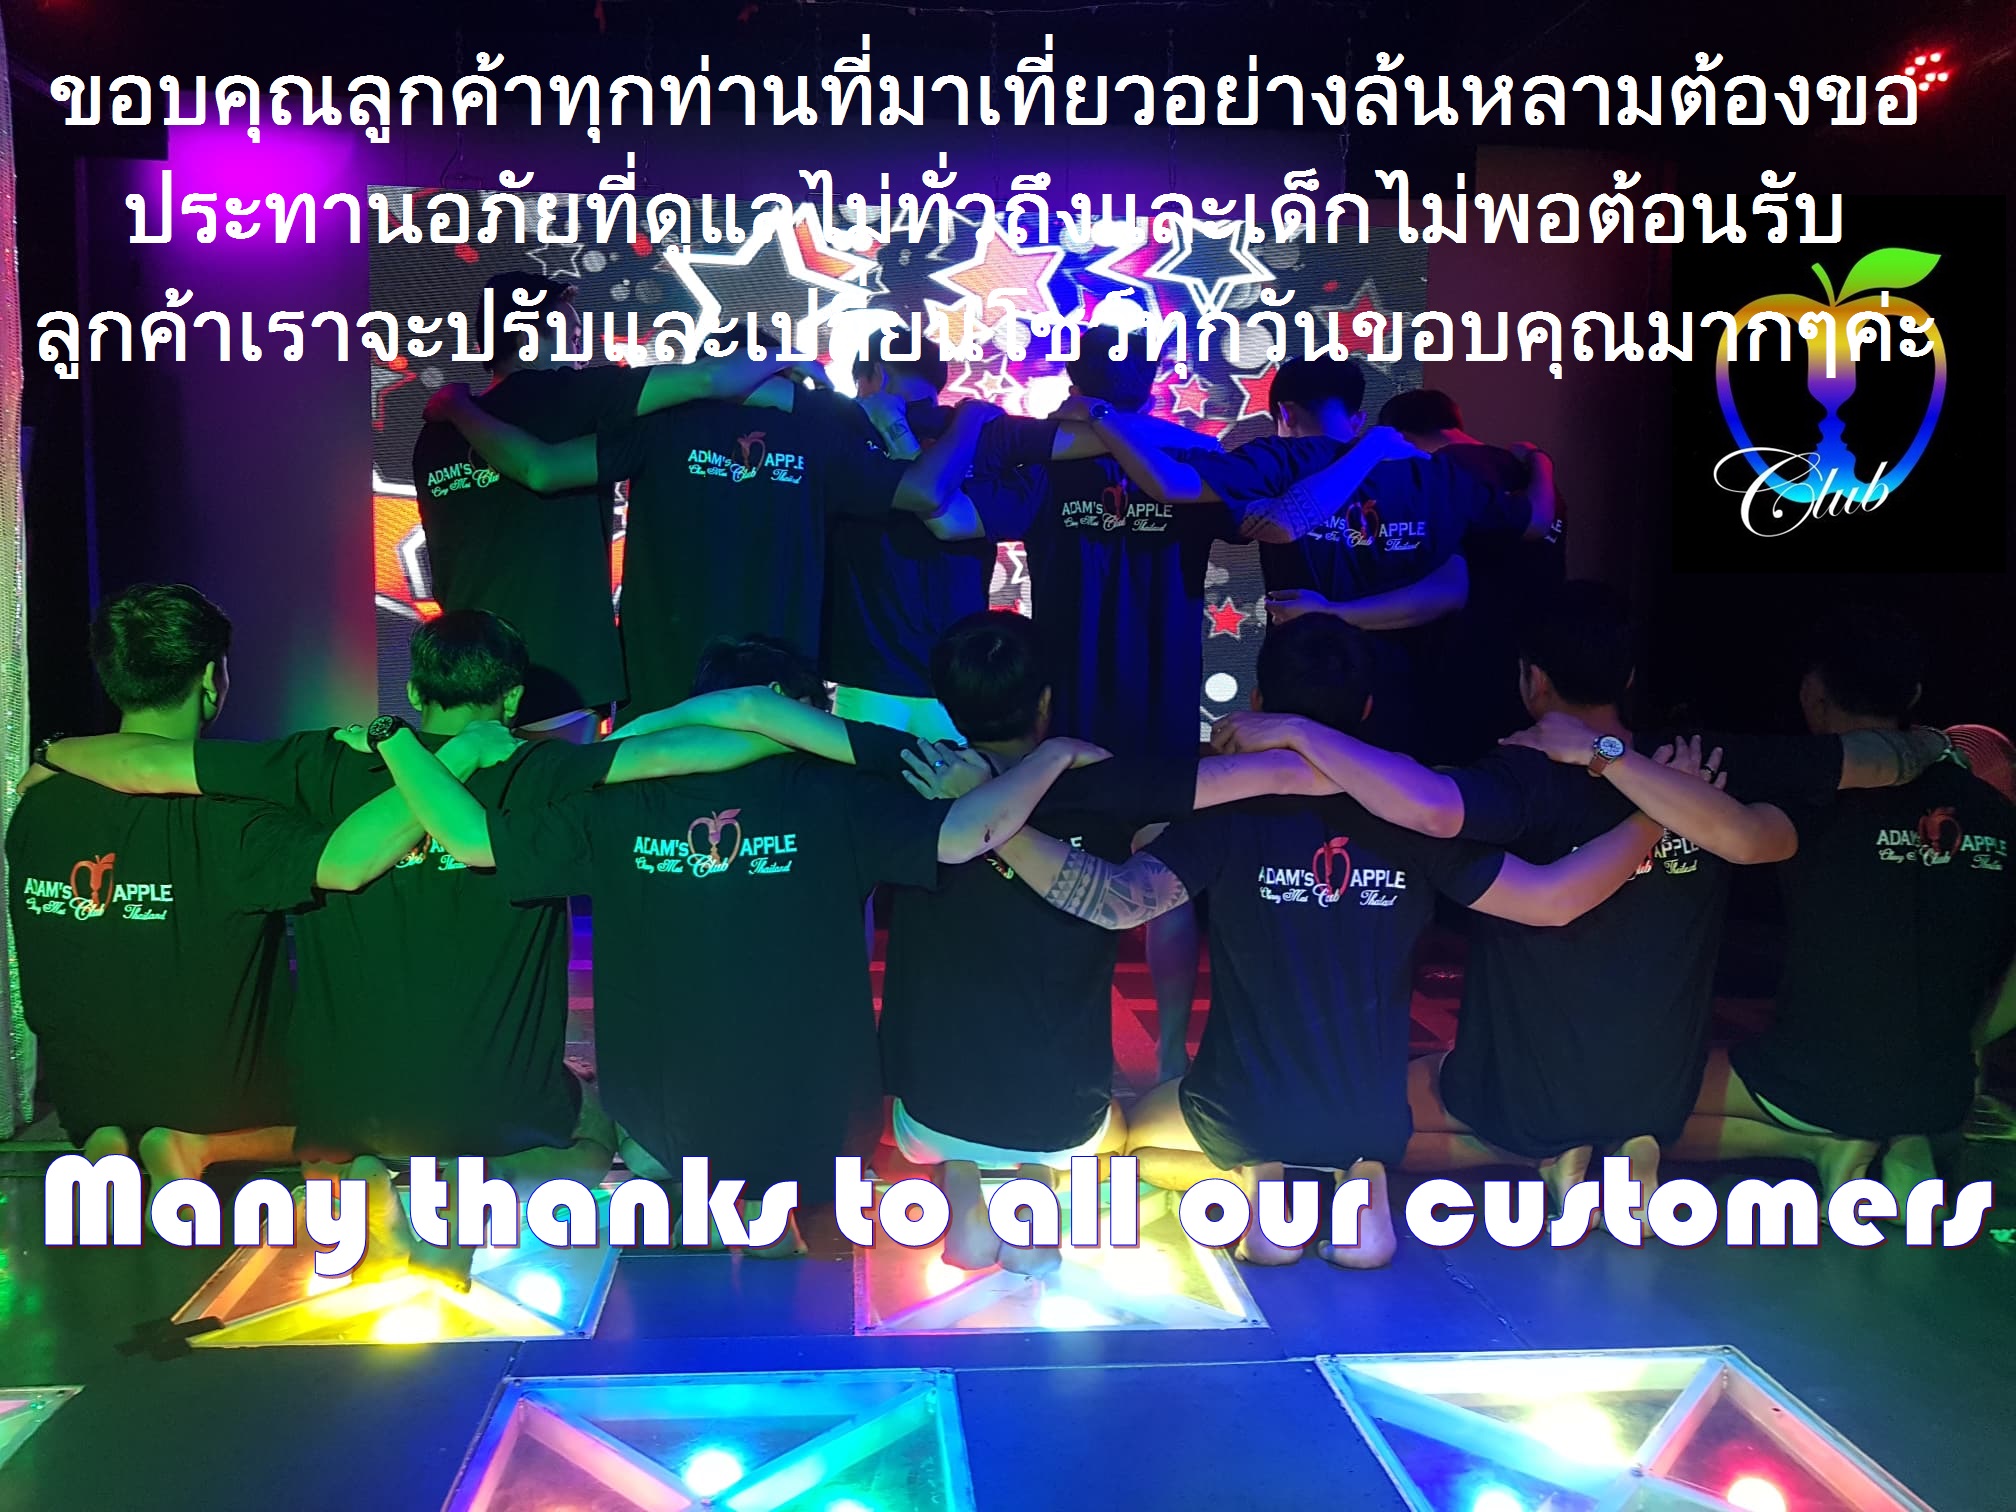 Thank YOU Adams Apple Club Host Bar Chiang Mai Thailand